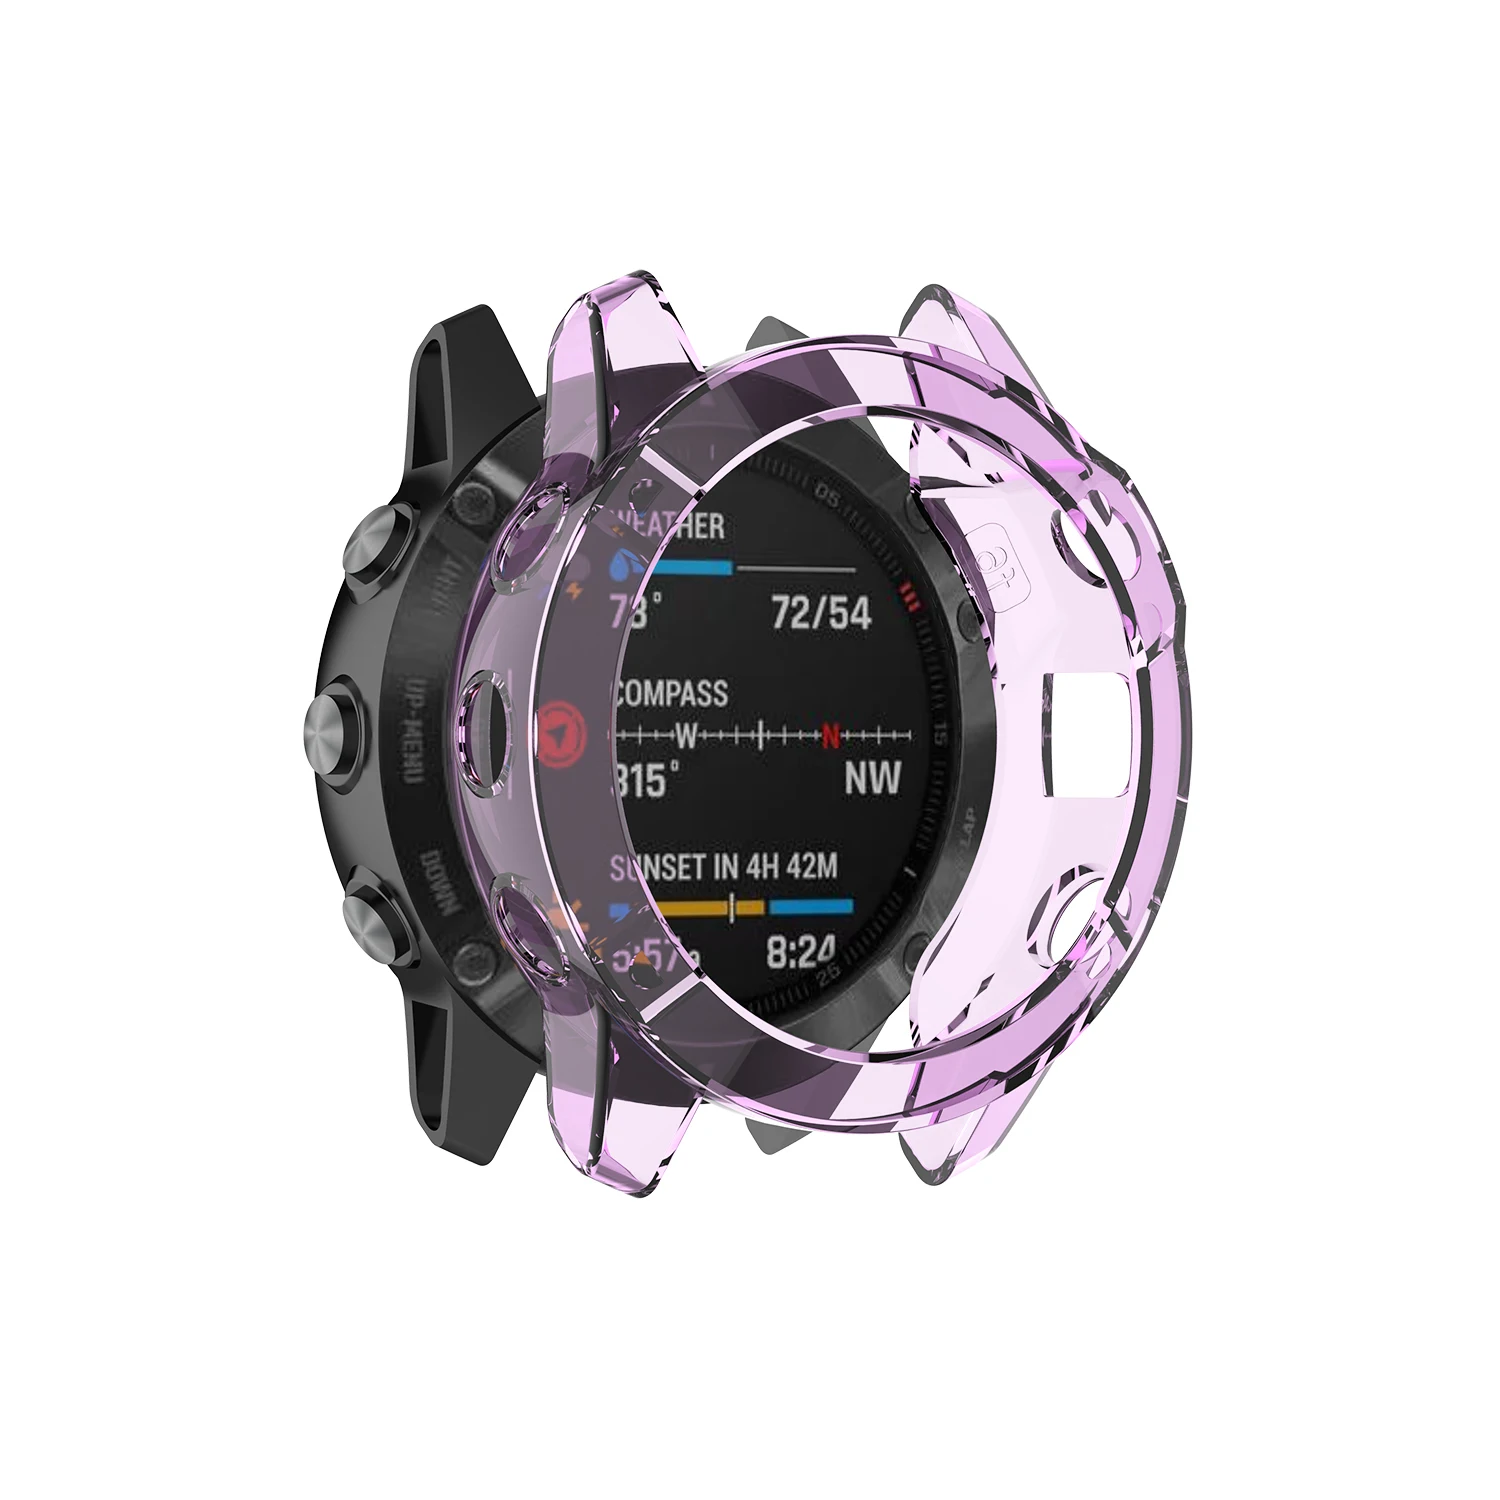 Чехол для часов Garmin Fenix 6 6s 6x Pro из ТПУ, защитный чехол для смарт-браслета, сменный противоударный Прозрачный чехол для часов - Цвет: Purple